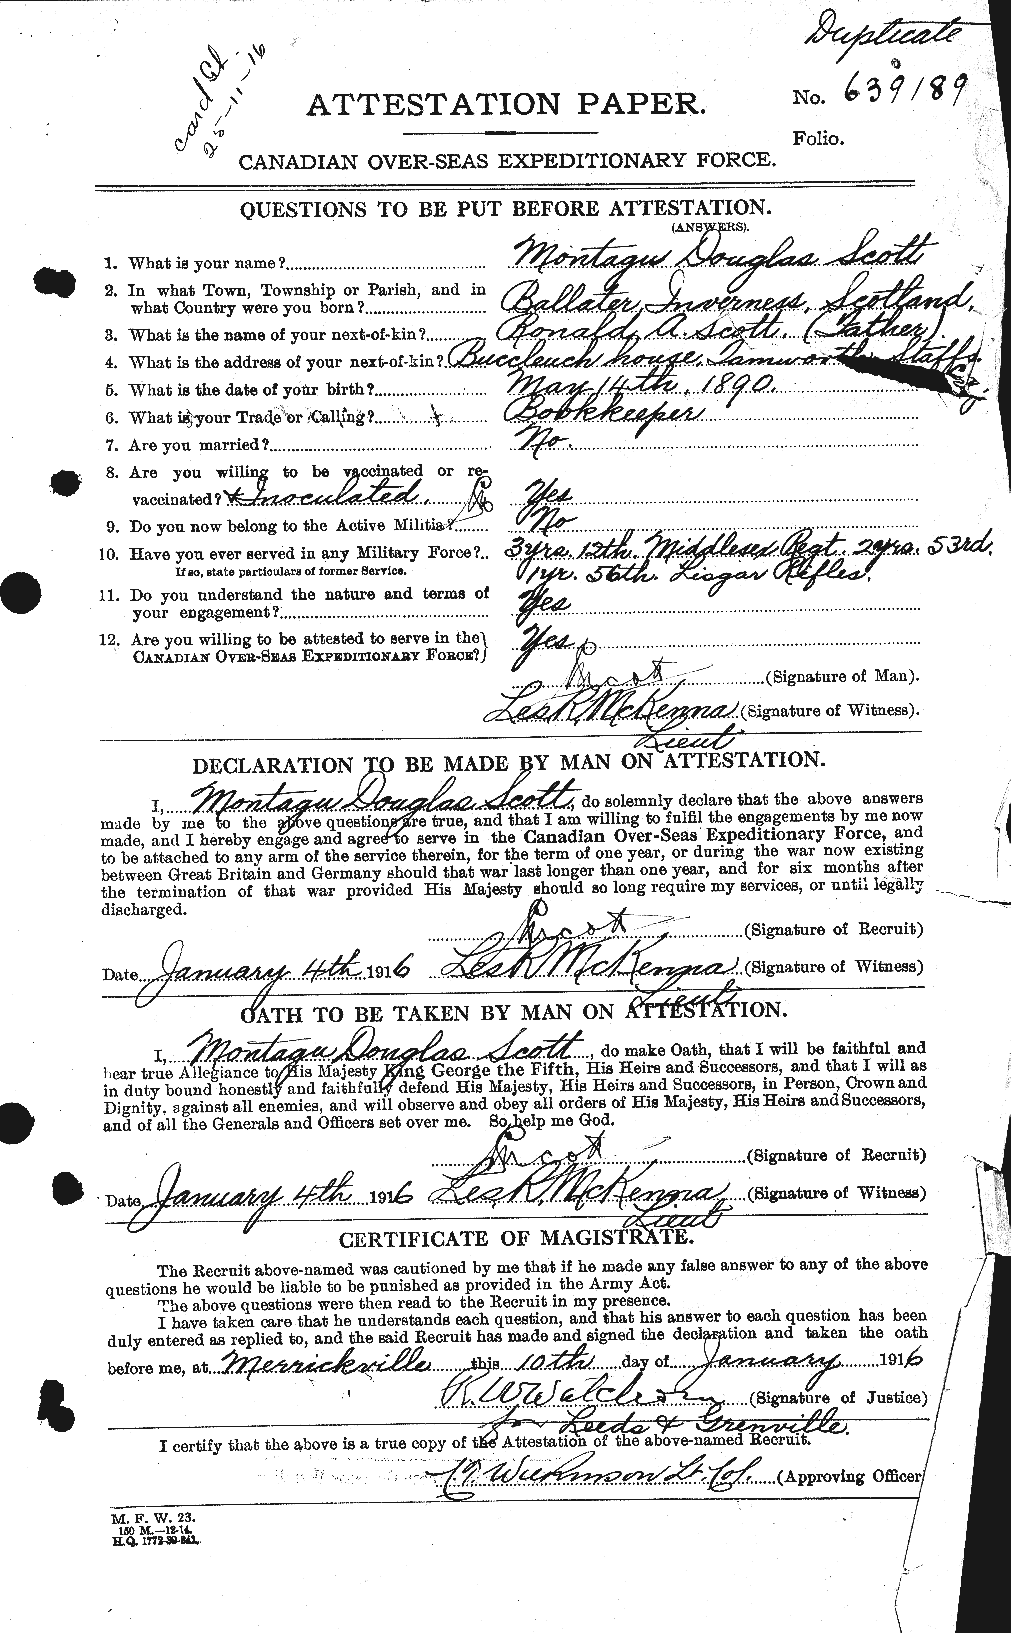 Dossiers du Personnel de la Première Guerre mondiale - CEC 083490a